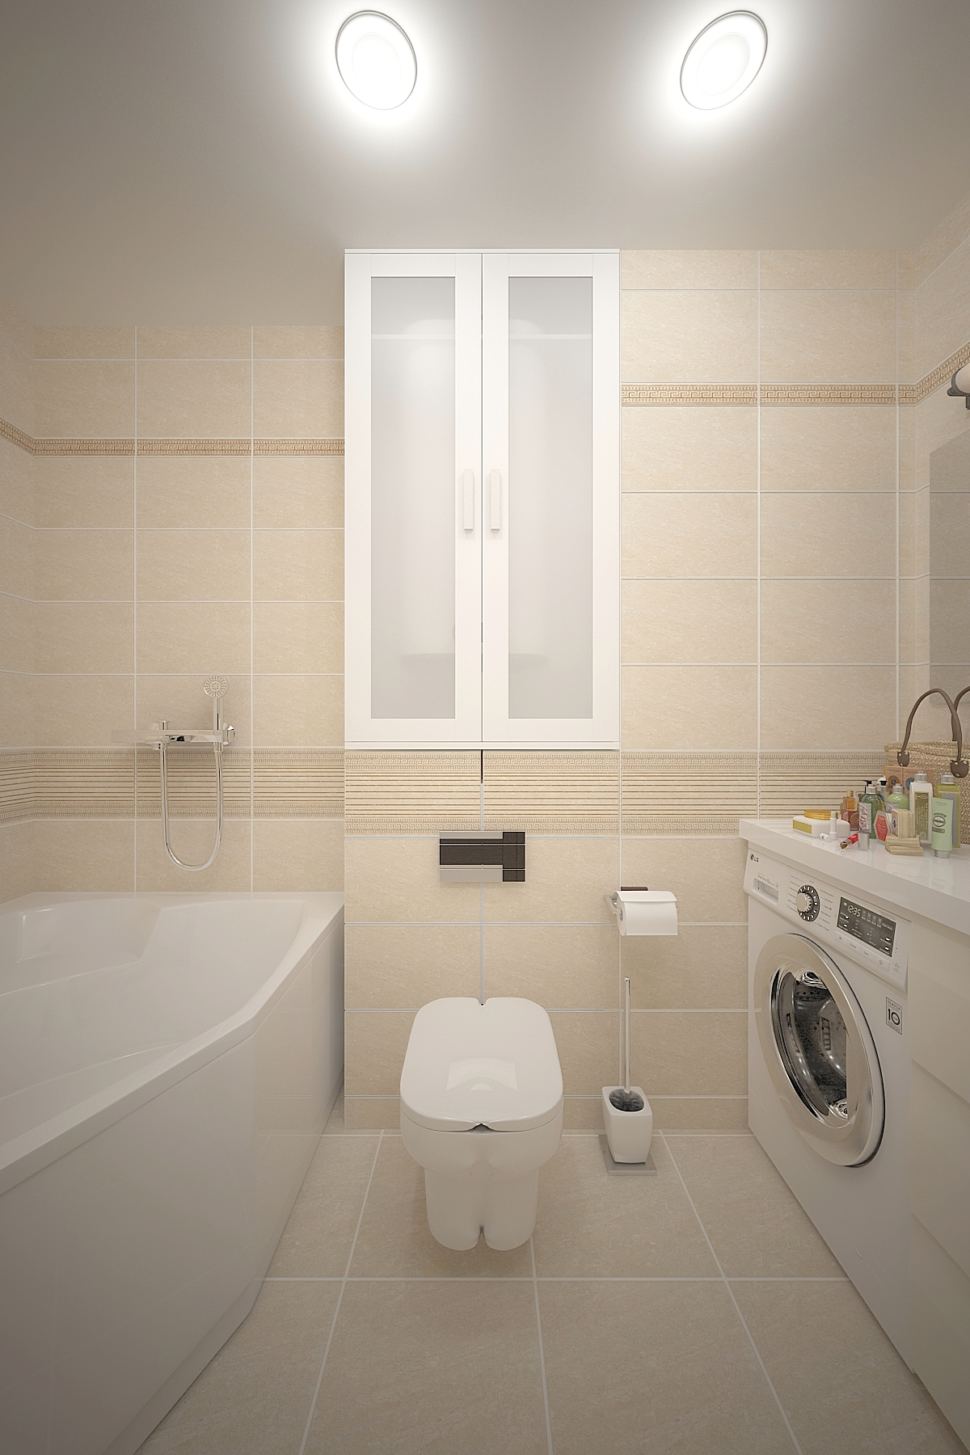 Визуализация ванной комнаты 3 кв.м в бежевых тонах, белый шкаф, стиральная машина, тумба, мойка, зеркало, унитаз